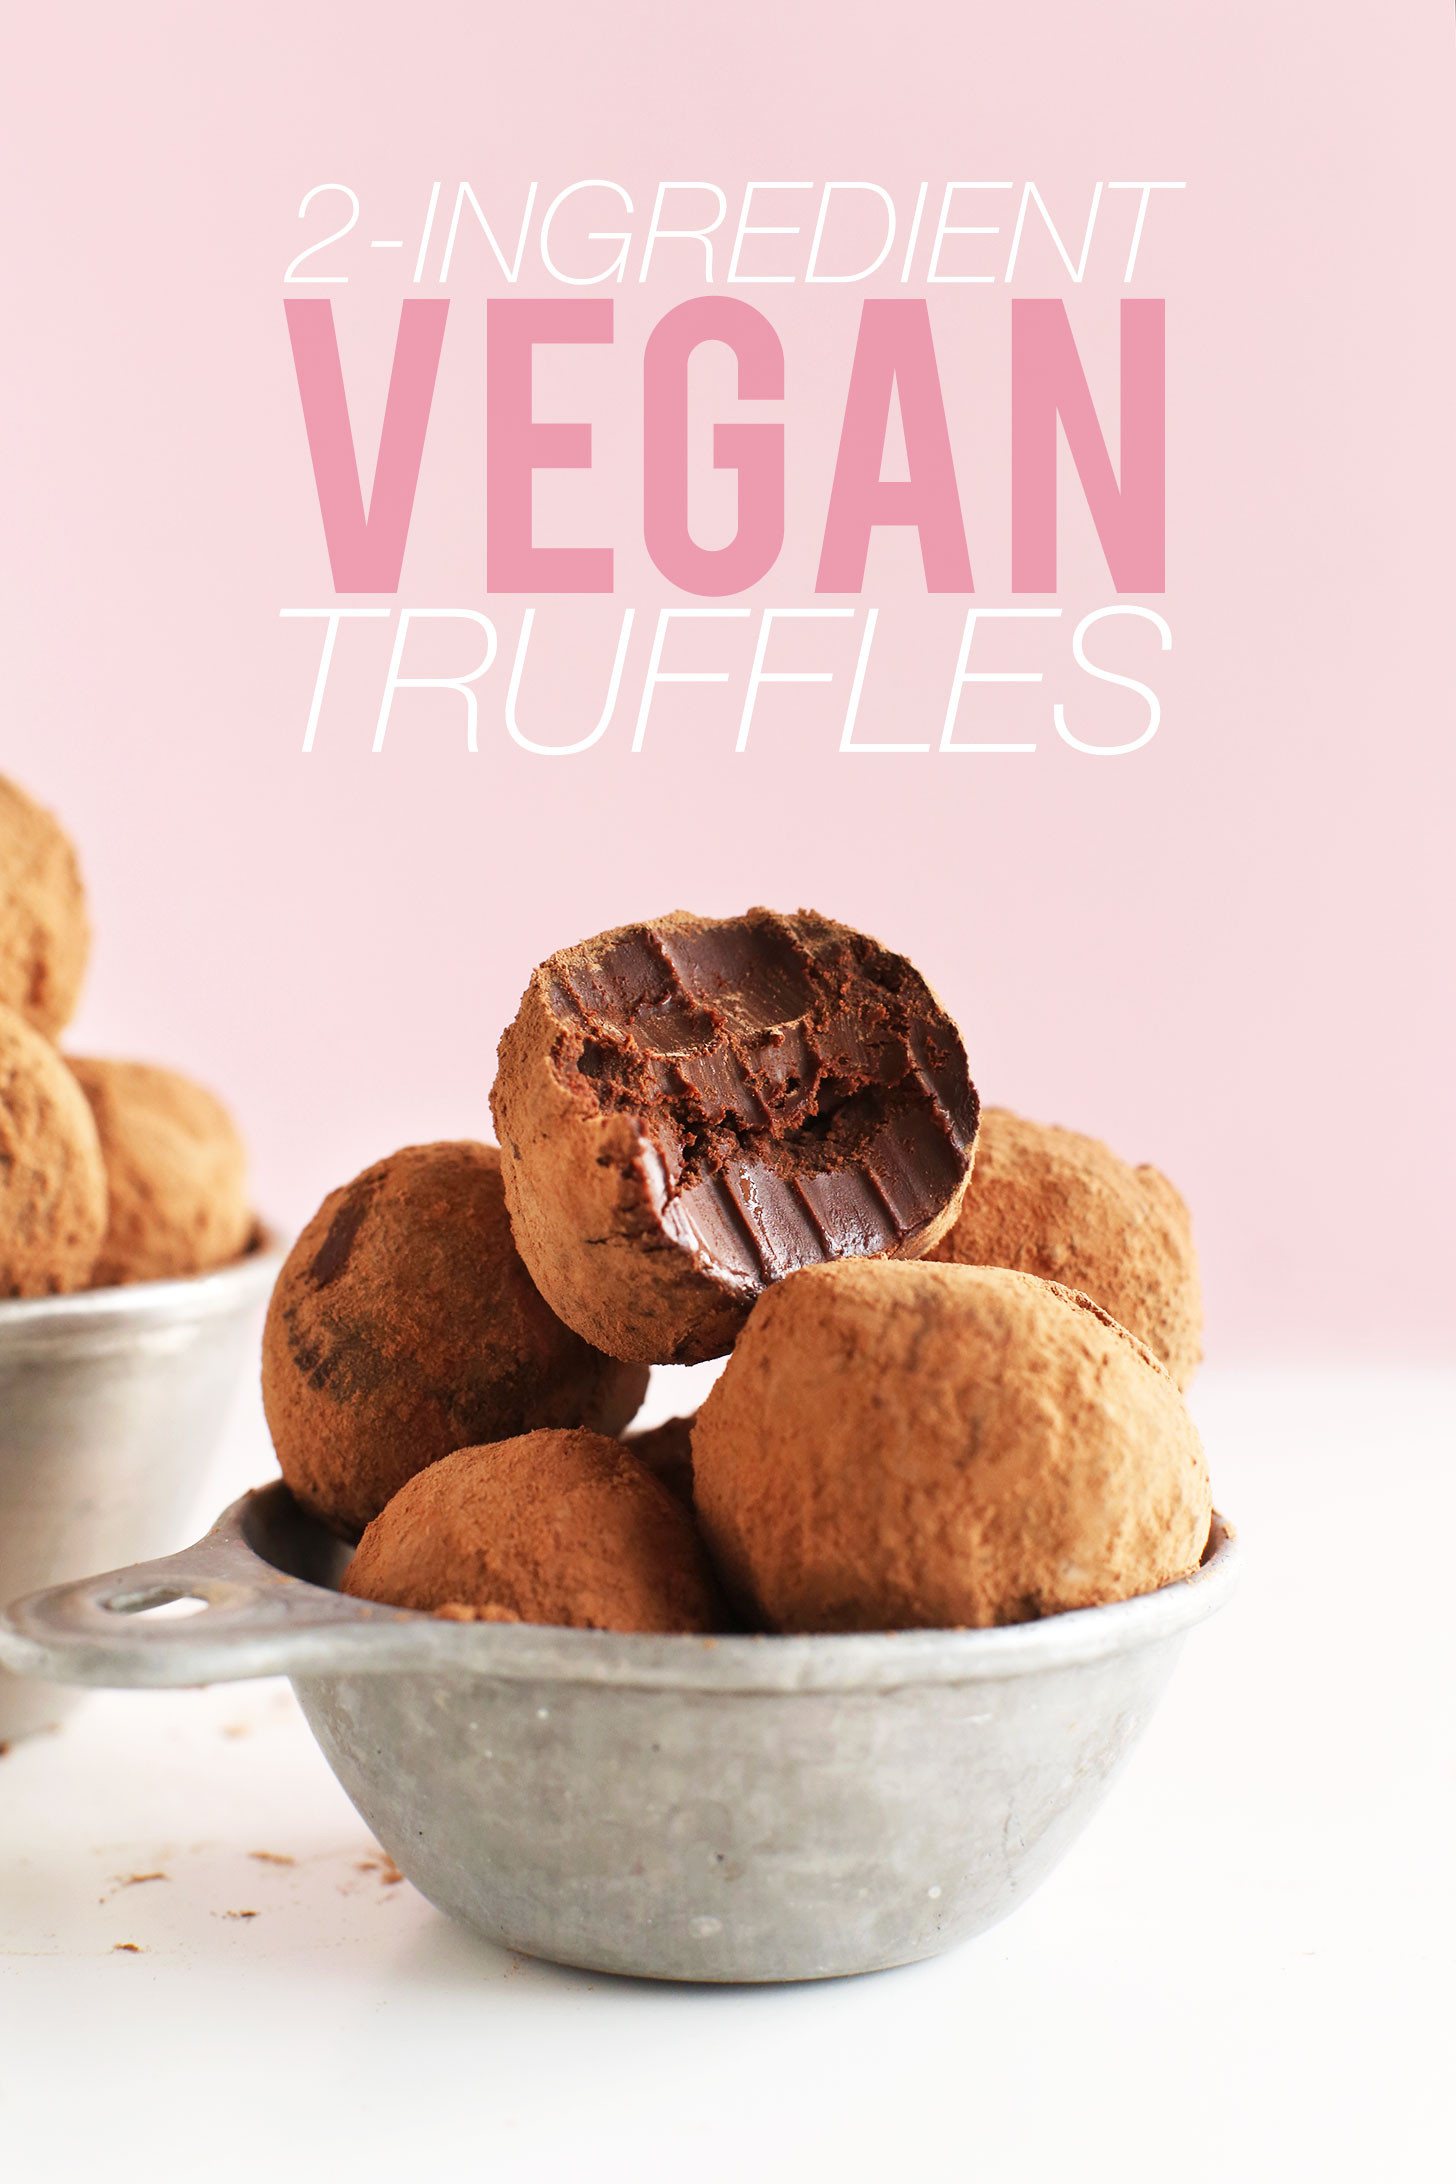 Vegan Coconut Milk Recipes
 2 Ingre nt Chocolate Truffles